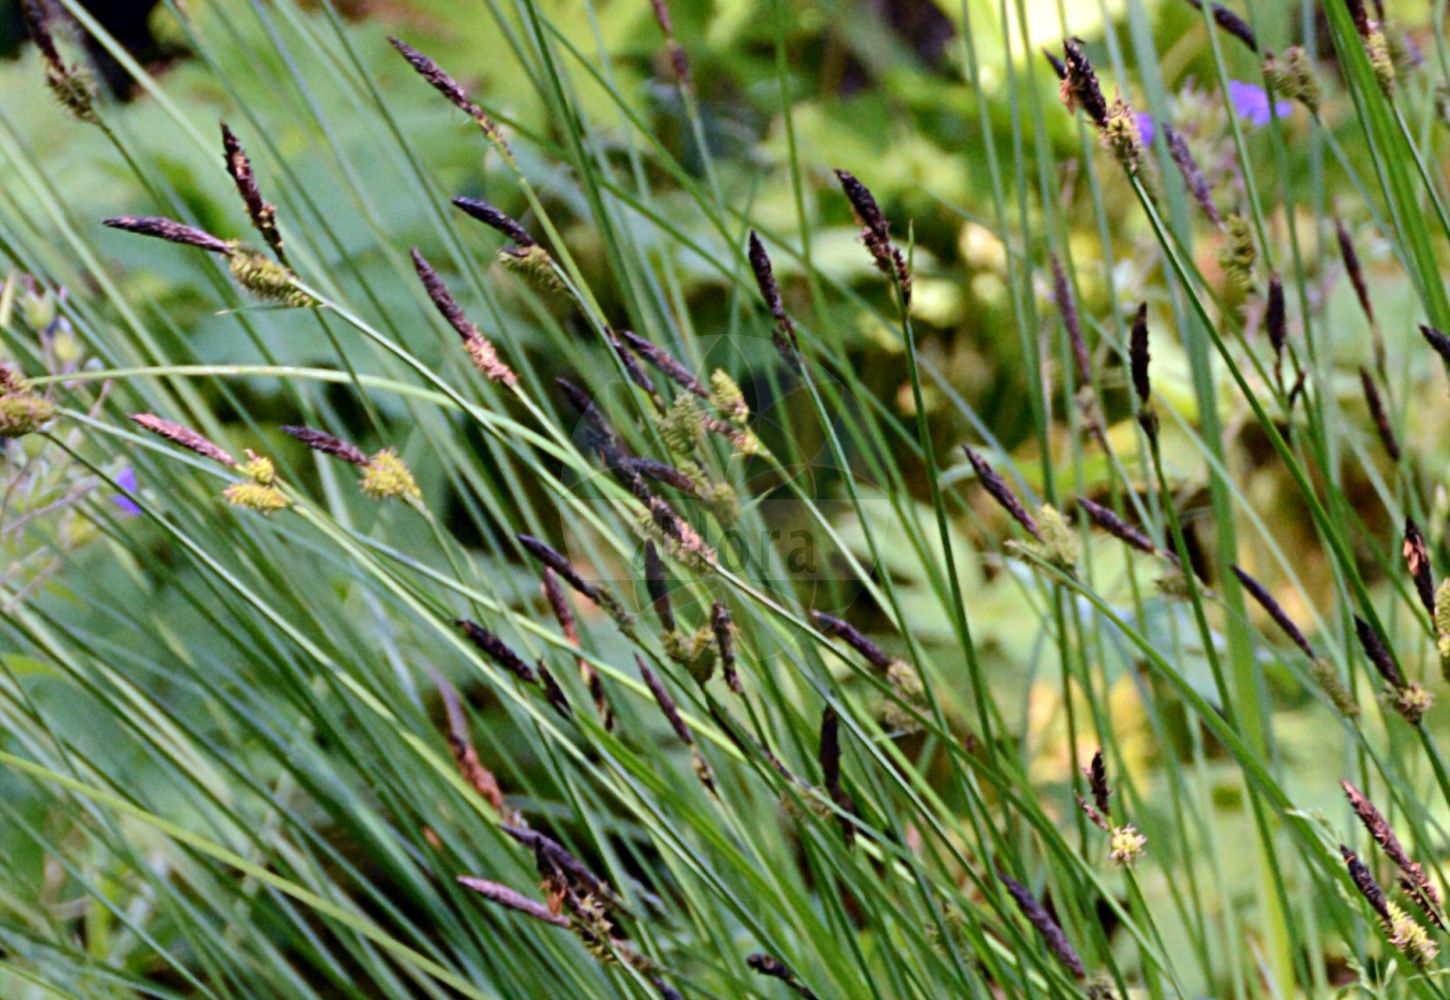 Foto von Carex cespitosa (Rasen-Segge - Lesser Tufted-Sedge). Das Bild zeigt Blatt, Bluete und Frucht. ---- Photo of Carex cespitosa (Rasen-Segge - Lesser Tufted-Sedge). The image is showing leaf, flower and fruit.(Carex cespitosa,Rasen-Segge,Lesser Tufted-Sedge,Carex cespitosa,Carex inumbrata,Carex neglecta,Carex retorta,Vignea neglecta,Rasen-Segge,Lesser Tufted-Sedge,Carex,Segge,Sedge,Cyperaceae,Sauergräser,Sedge family,Blatt,Bluete,Frucht,leaf,flower,fruit)